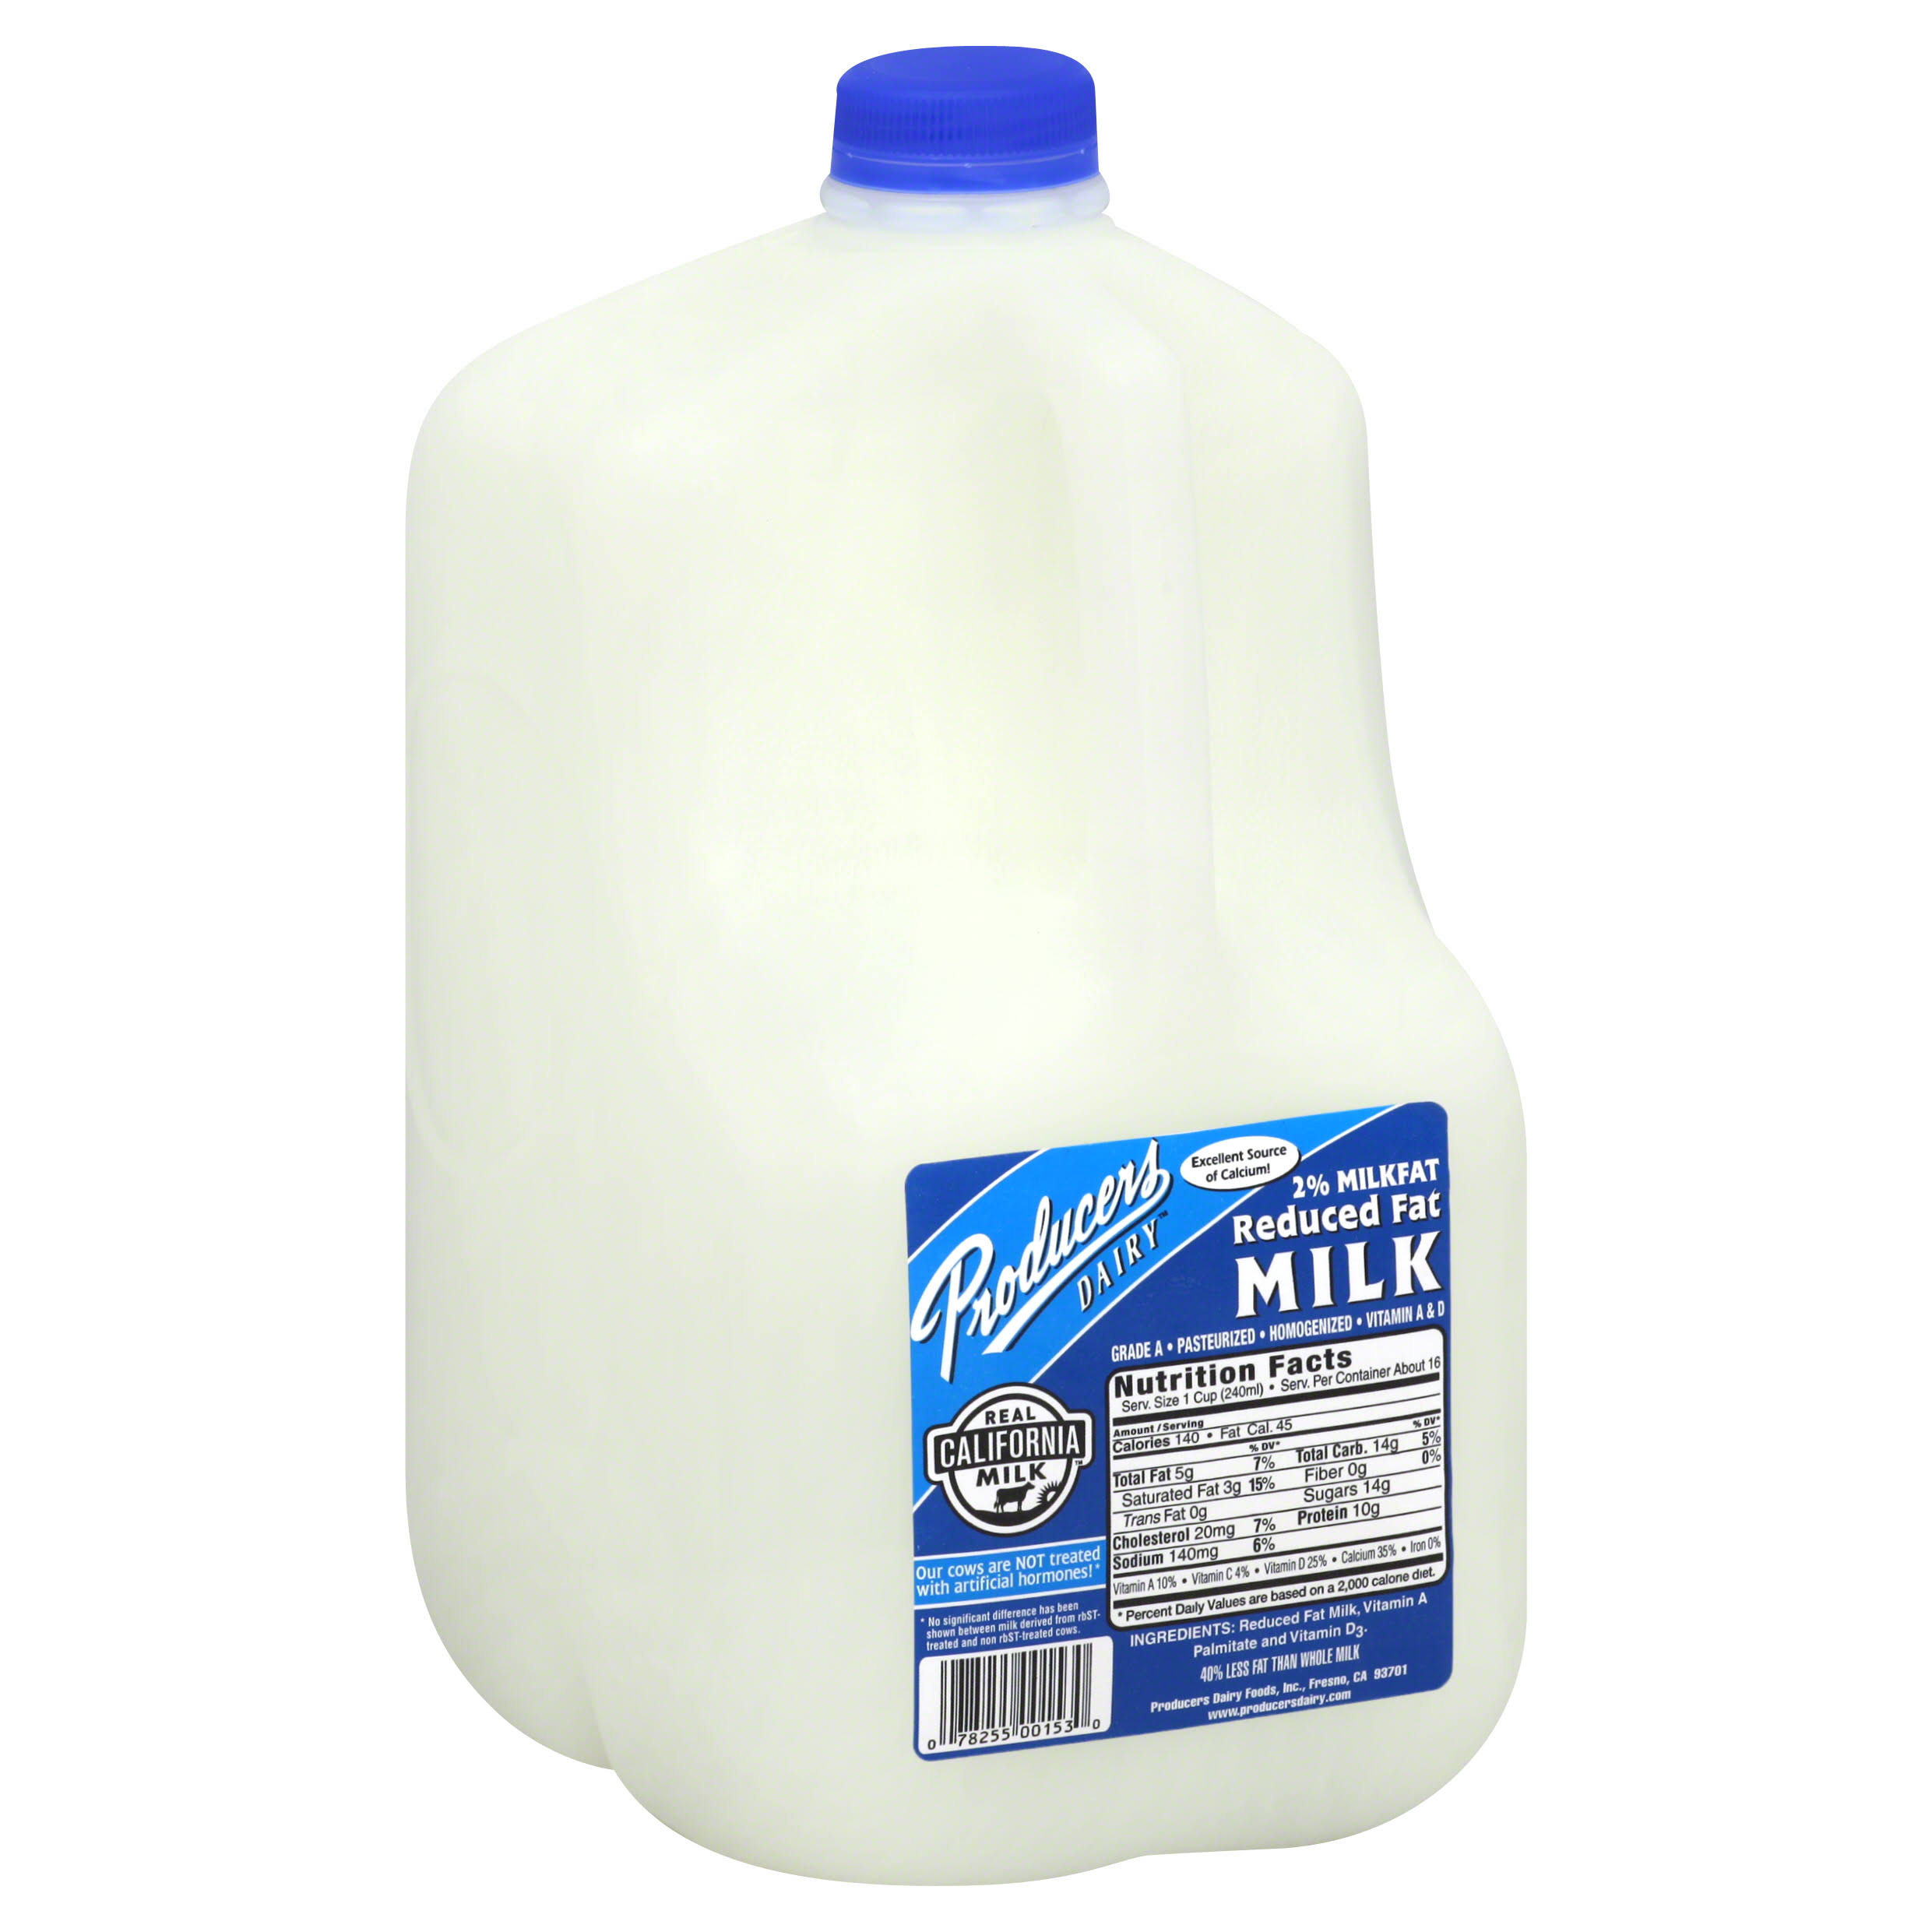 Producers Milk, Reduced Fat, 2% Milkfat - 128 fl oz